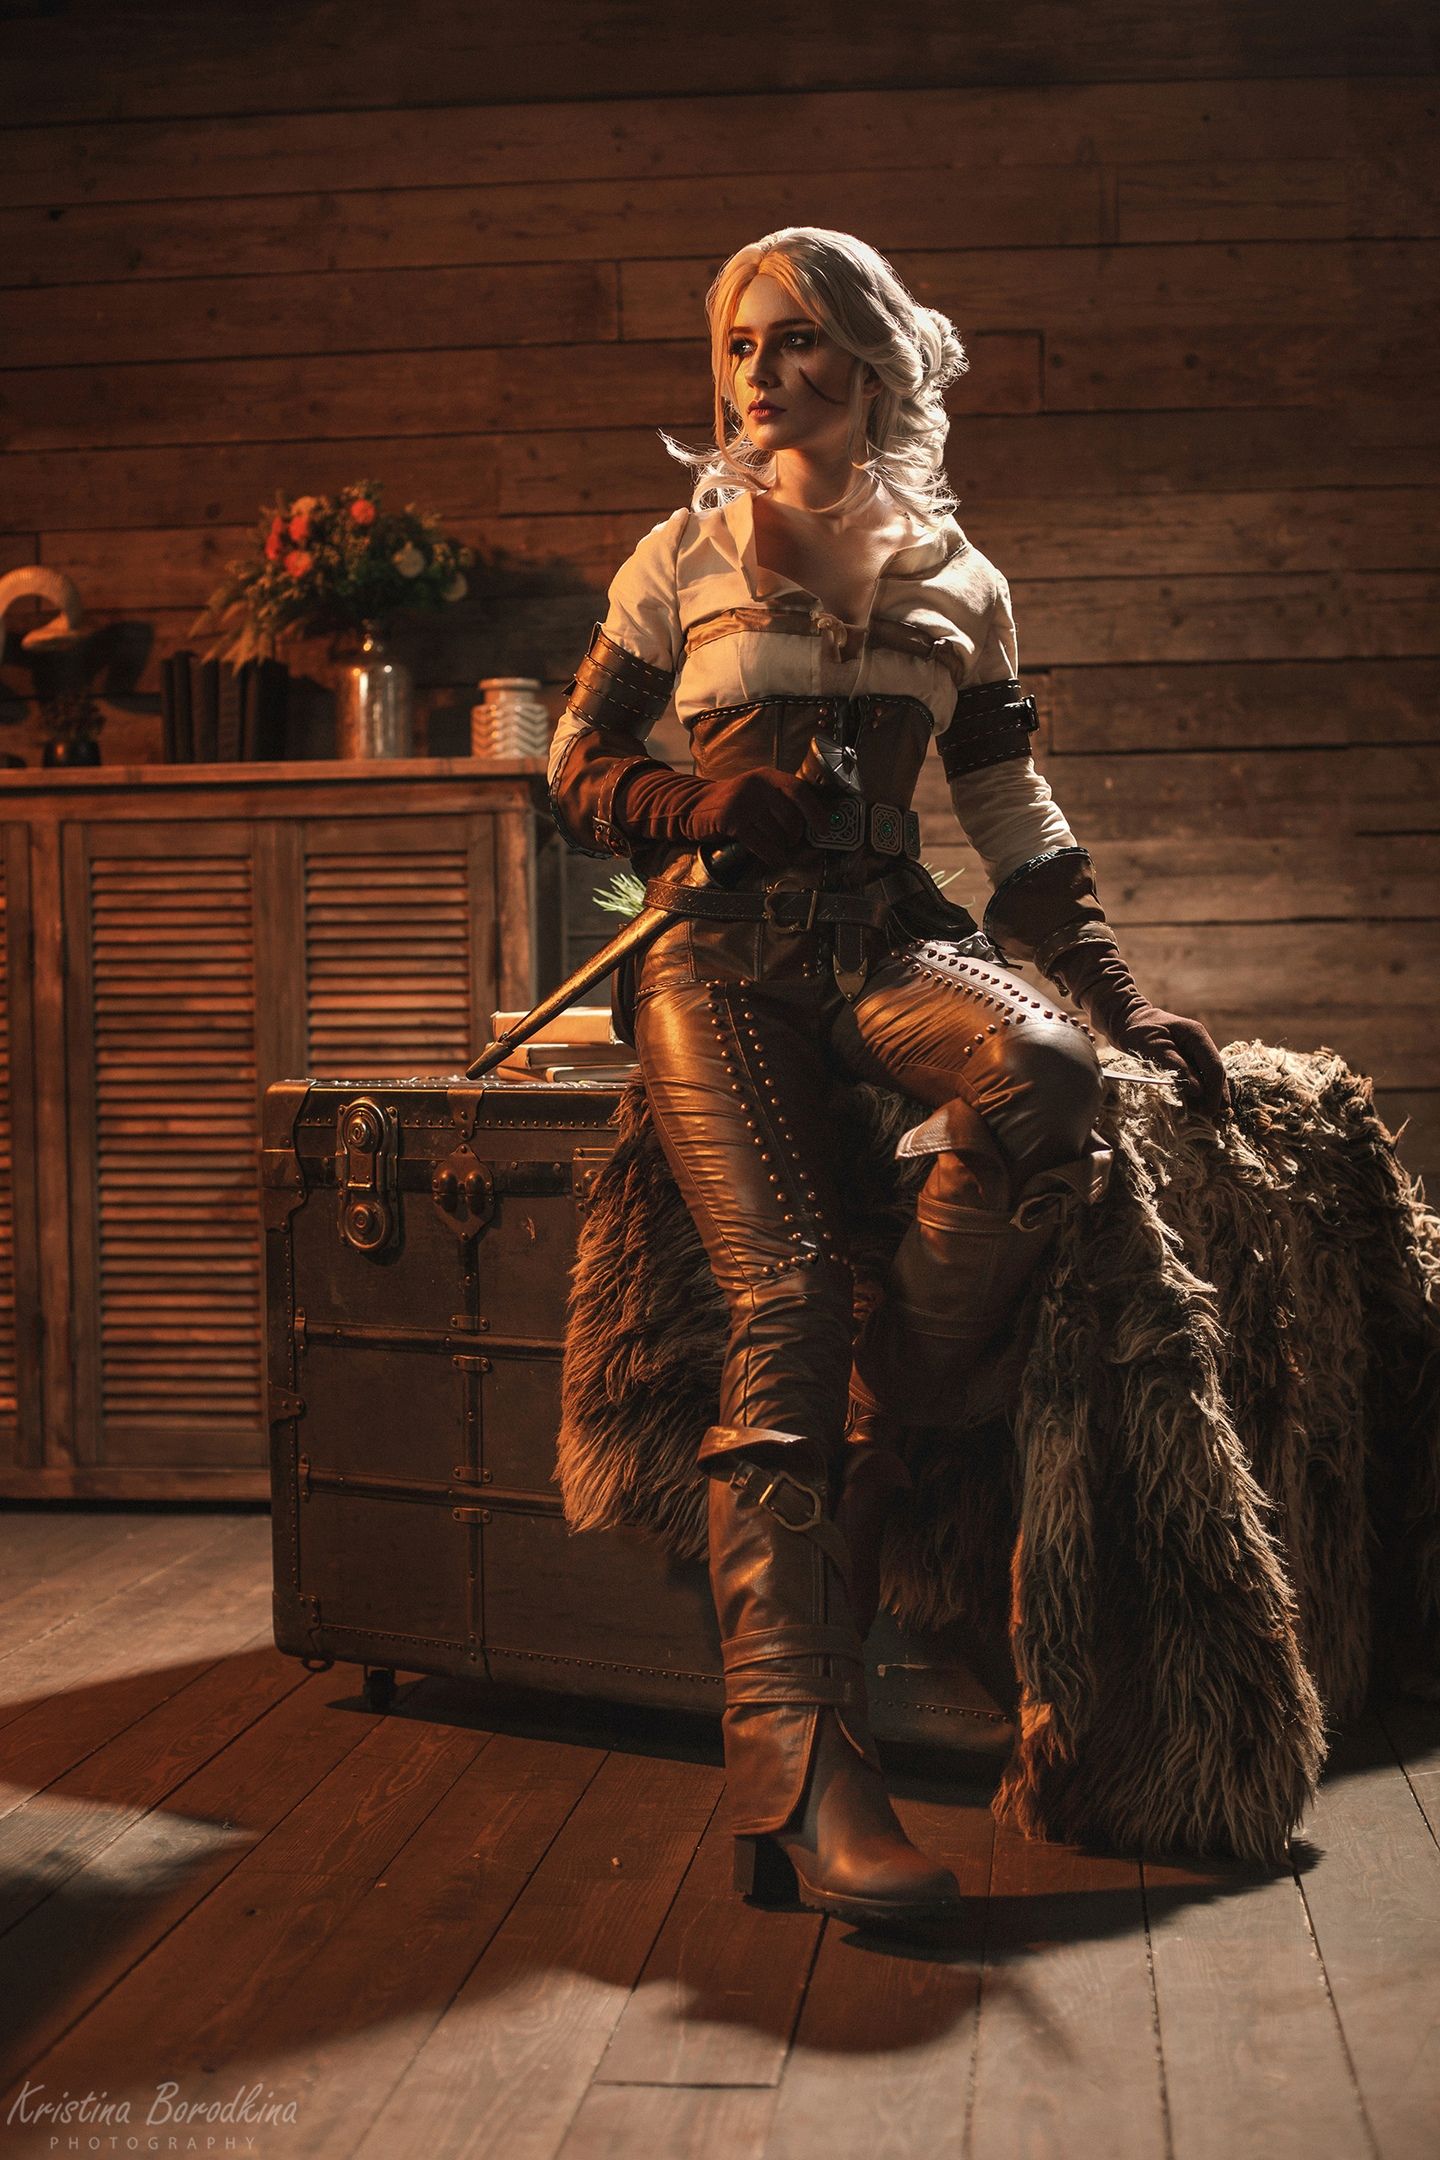 Косплей на Цири из The Witcher 3: Wild Hunt. Косплеер: Кристина Волкова. Фотограф: Кристина Бородкина. Источник: vk.com/kristina_borodkina_photo